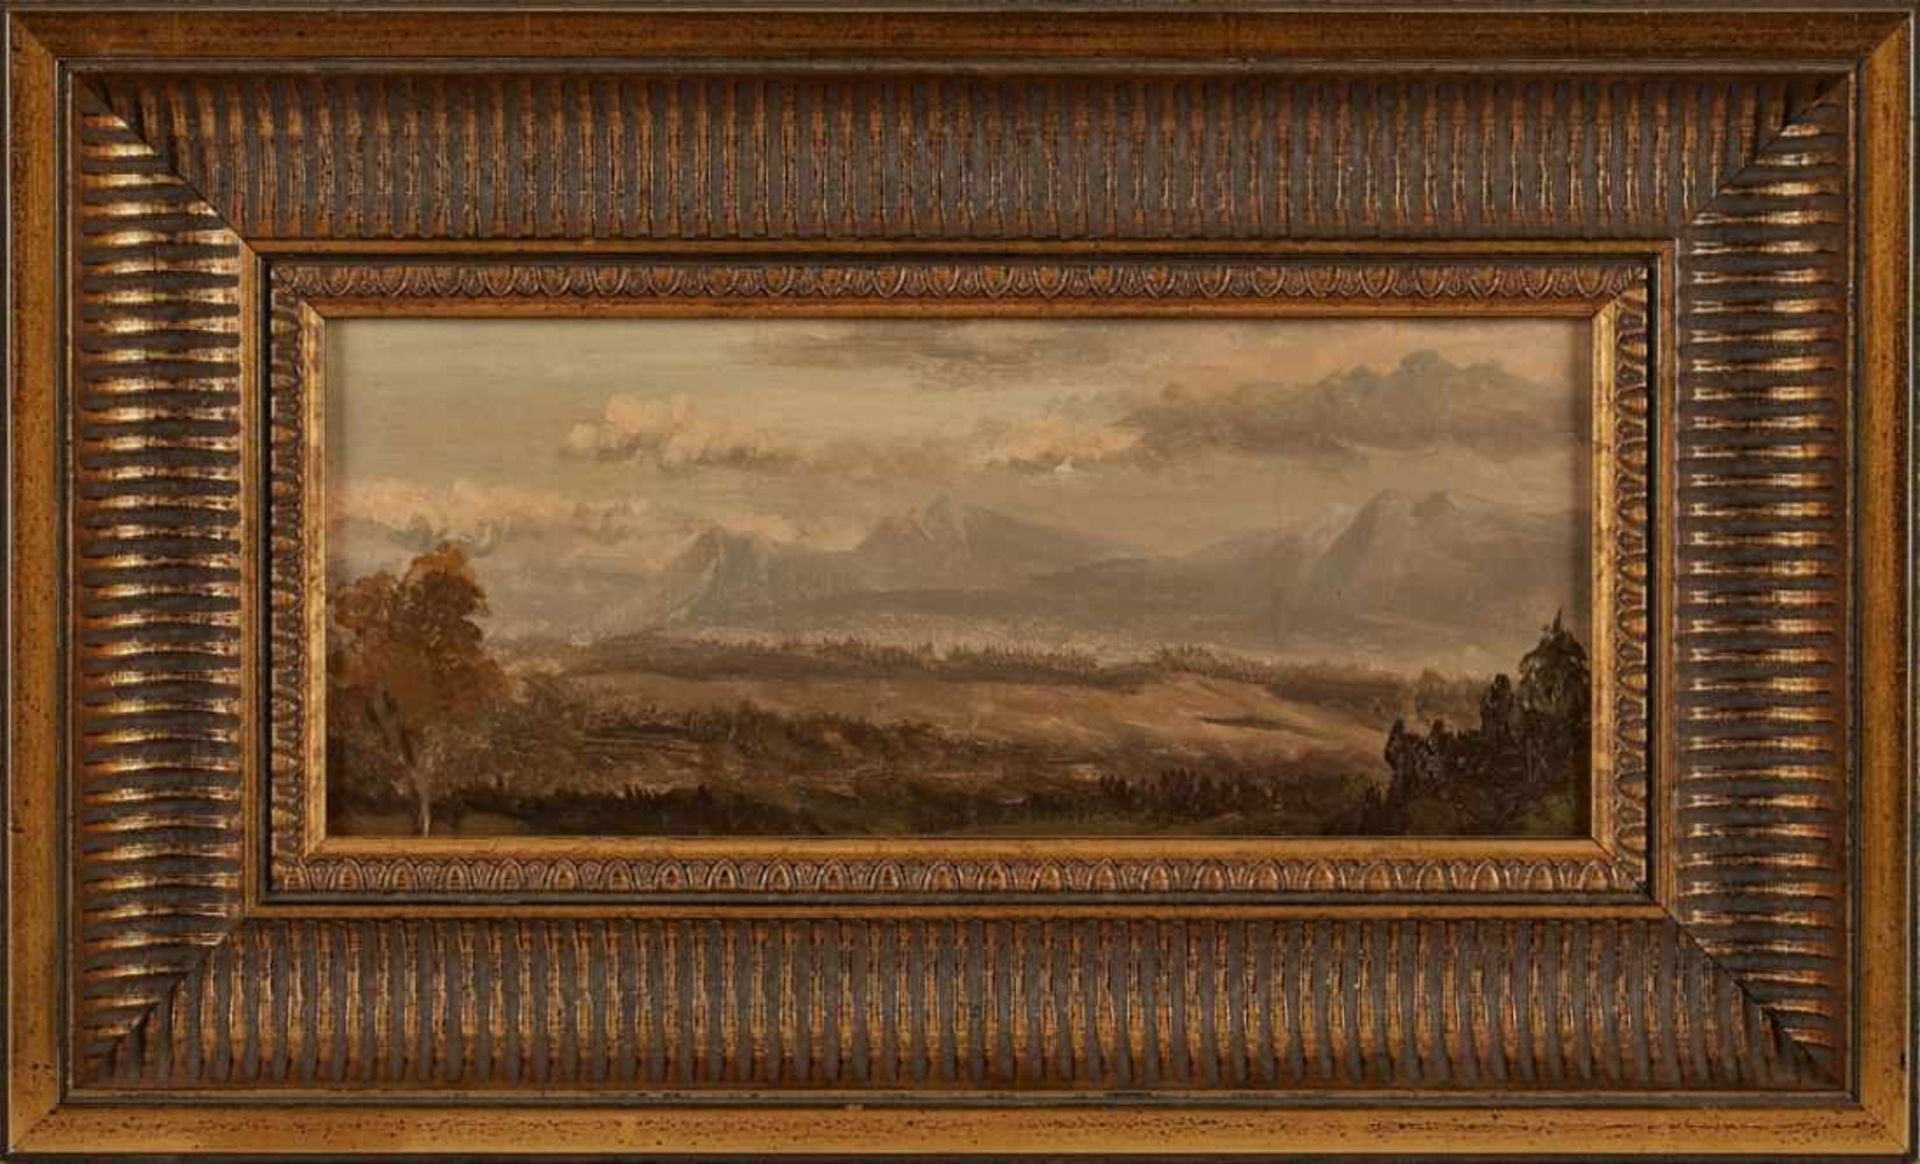 Gemälde Richard Fresenius 1844 Frankfurt - 1903 Monte Carlo "Alpenlandschaft" Verso mit dem